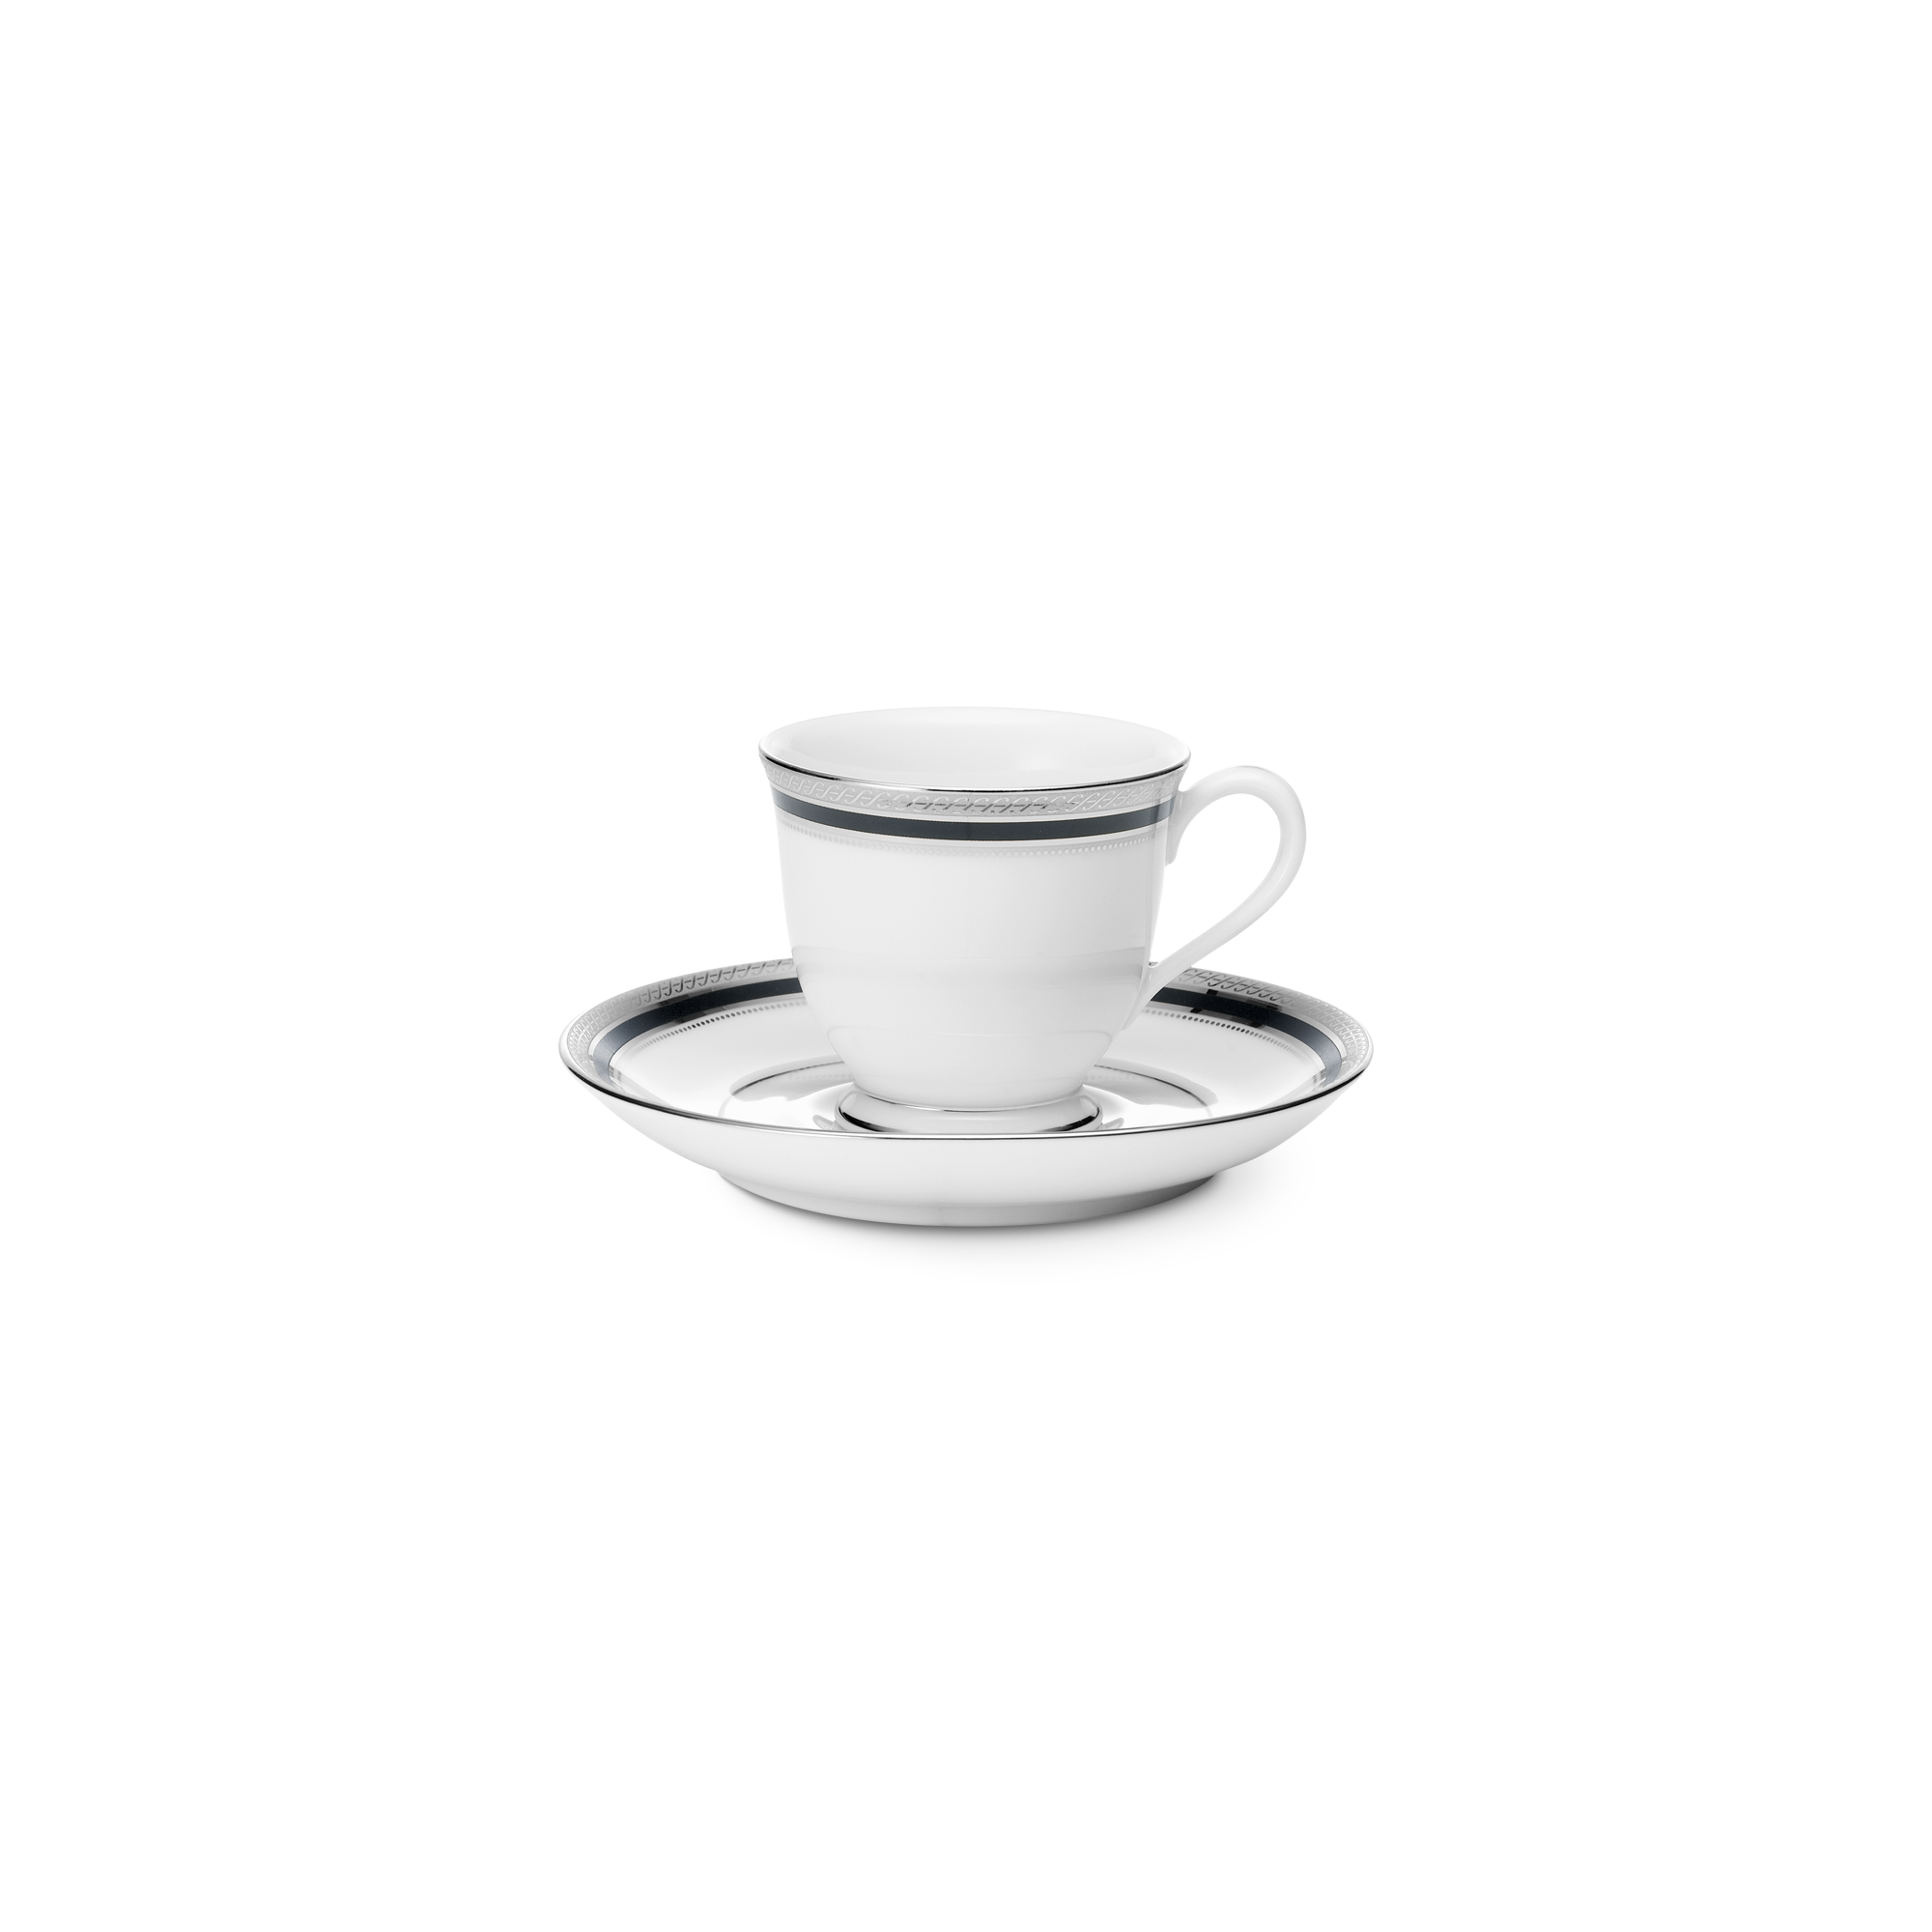  Chén trà (tách trà) kèm đĩa lót dung tích 90ml sứ trắng | Austin Platinum 4360L-T91392 